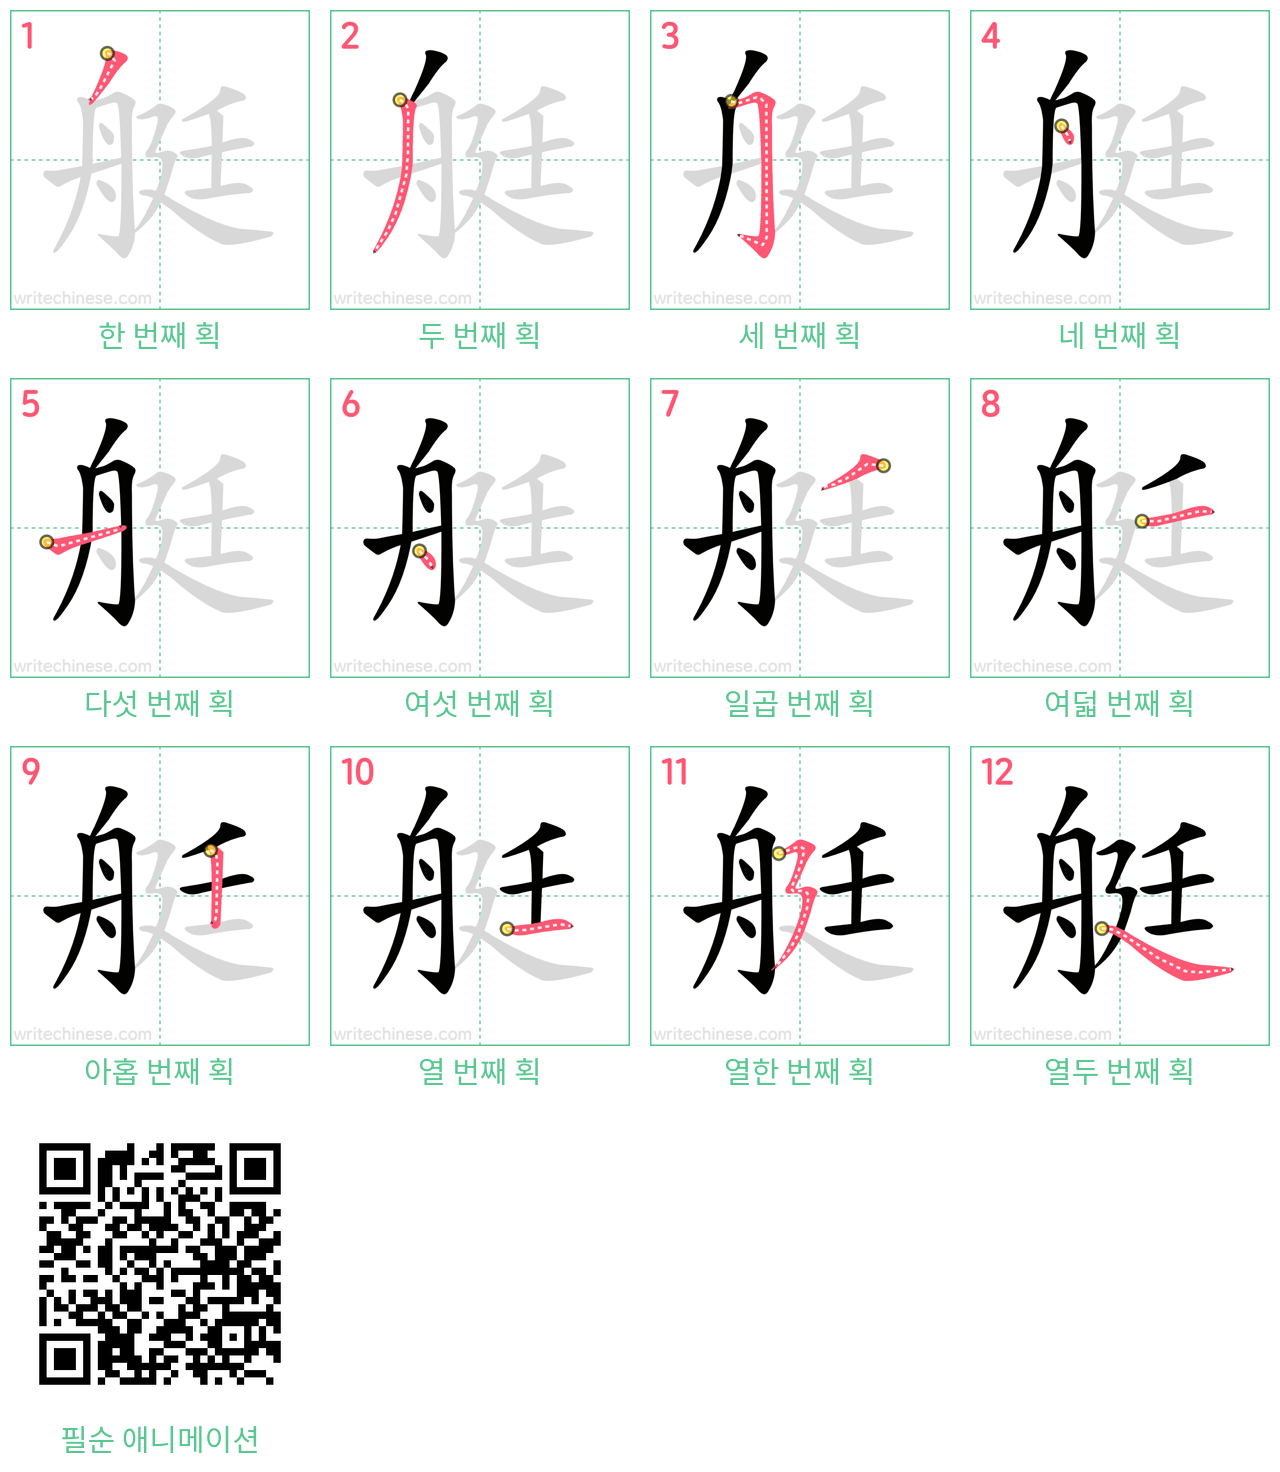 艇 step-by-step stroke order diagrams